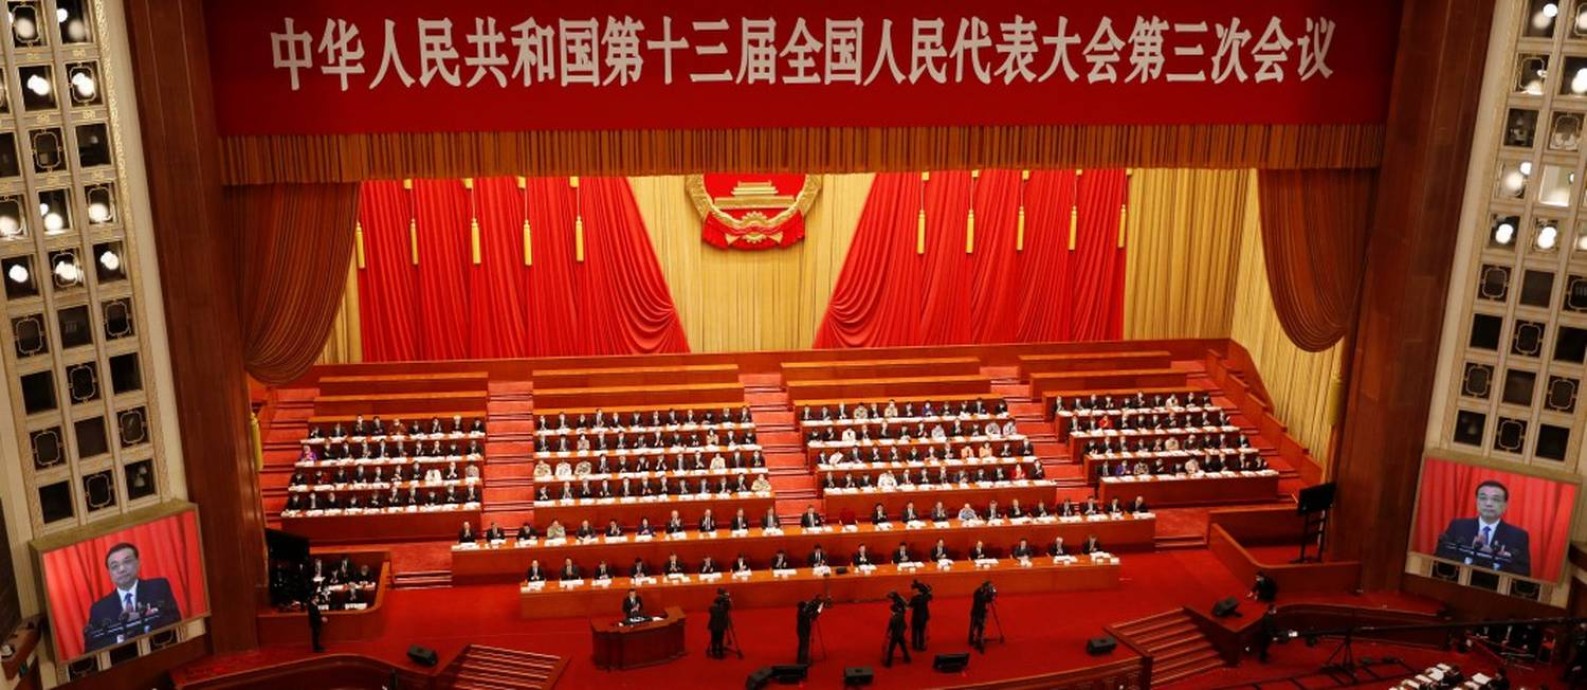 O premier chinês Li Keqiang discursa na abertura do Congresso Nacional do Povo, que acontece com dois meses de atraso devido à pandemia Foto: CARLOS GARCIA RAWLINS / REUTERS